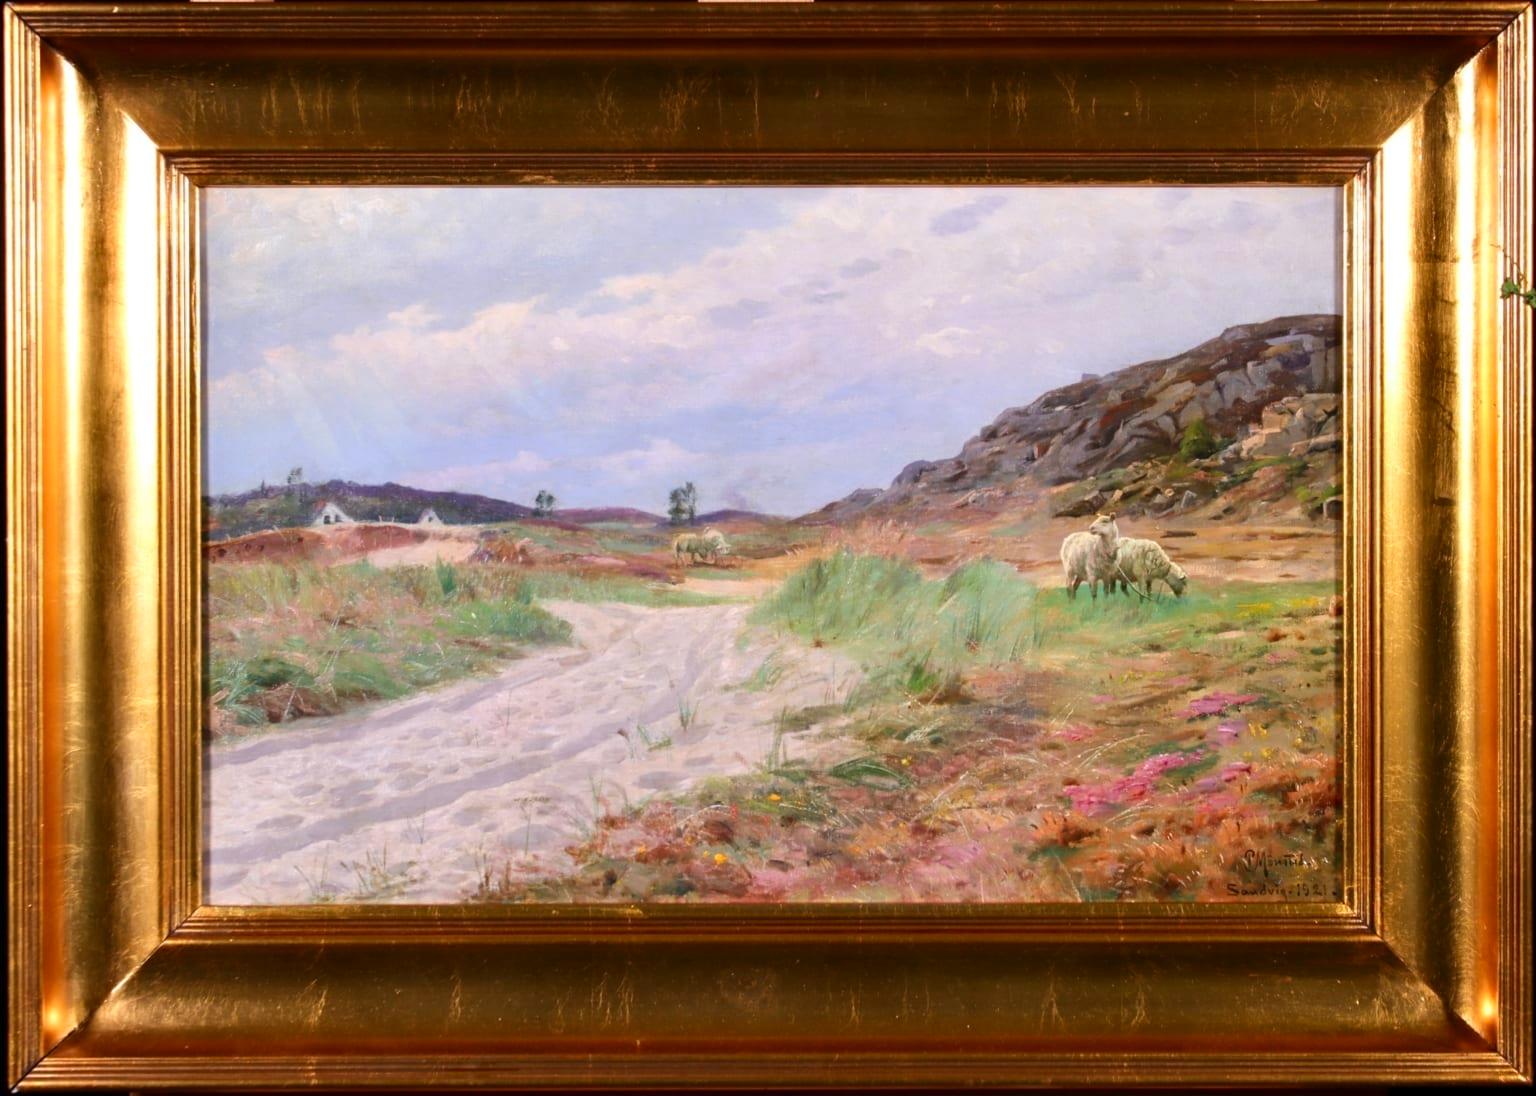 Sandvig, Bornholm - 1921 - Realist Oil, Cattle in Summer Landscape by PM Monsted - Painting by Peder Mørk Mønsted